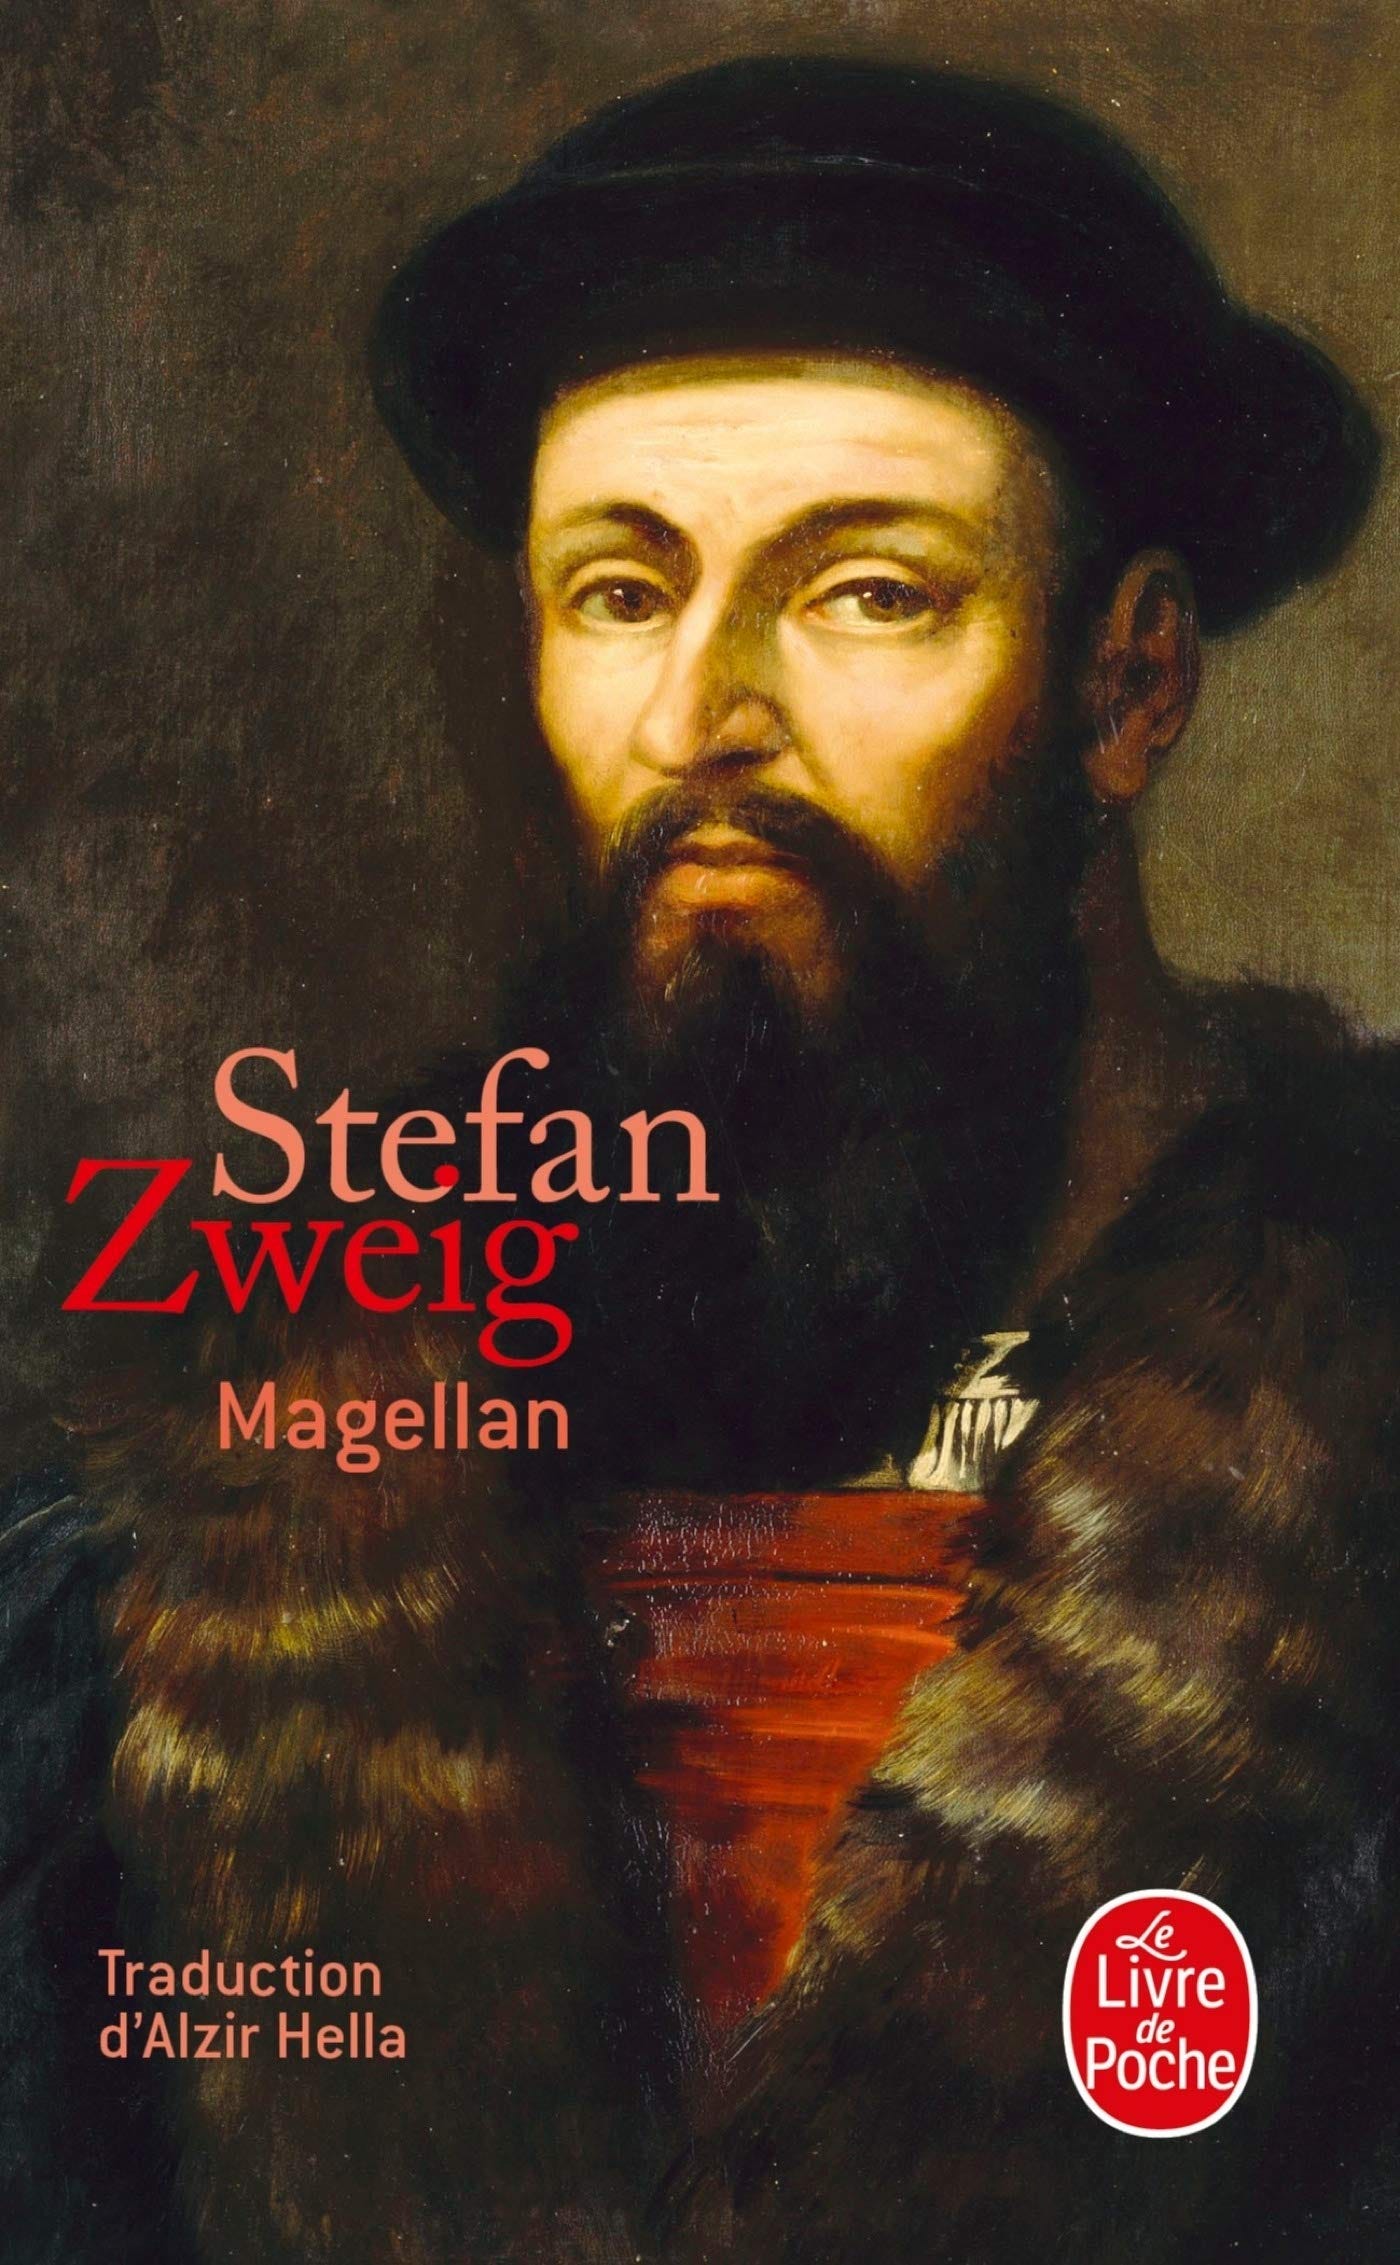 Amazon.fr - Magellan - Zweig, Stefan - Livres